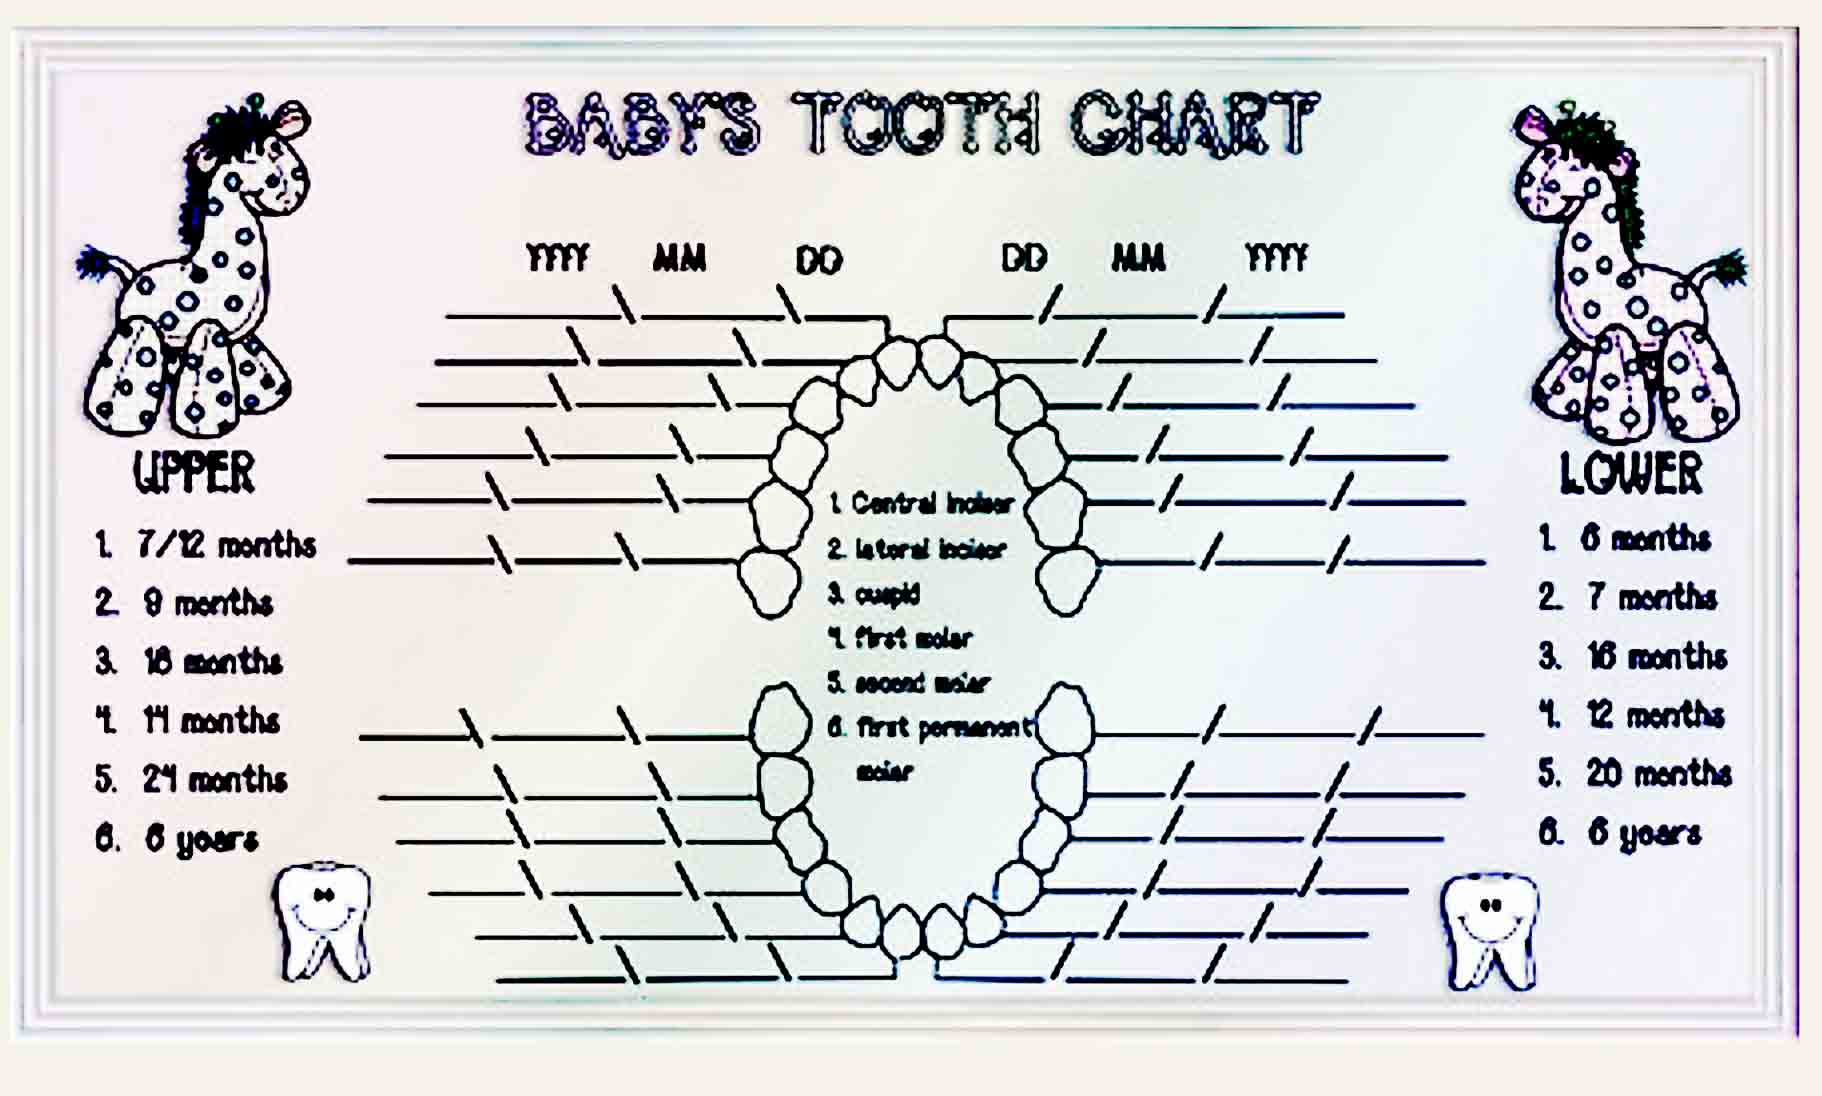 baby teeth chart 27